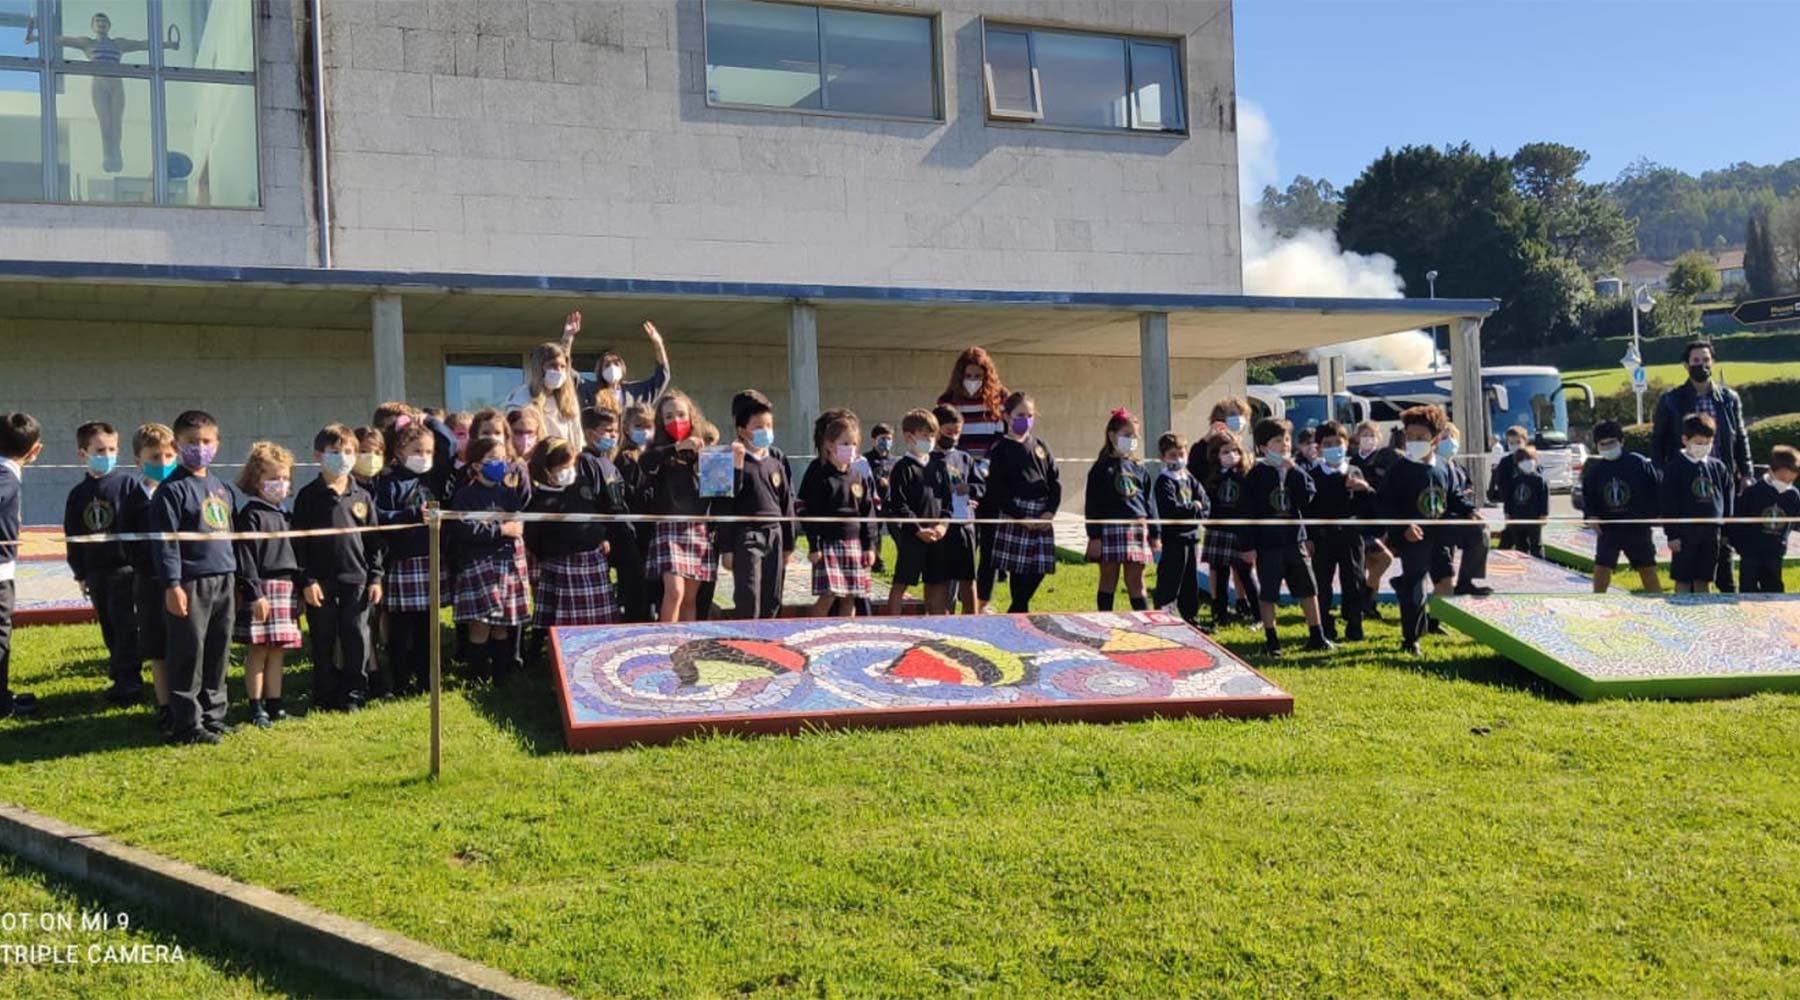 Inícianse as visitas guiadas escolares (20021-22) cun grupo numeroso de A Coruña